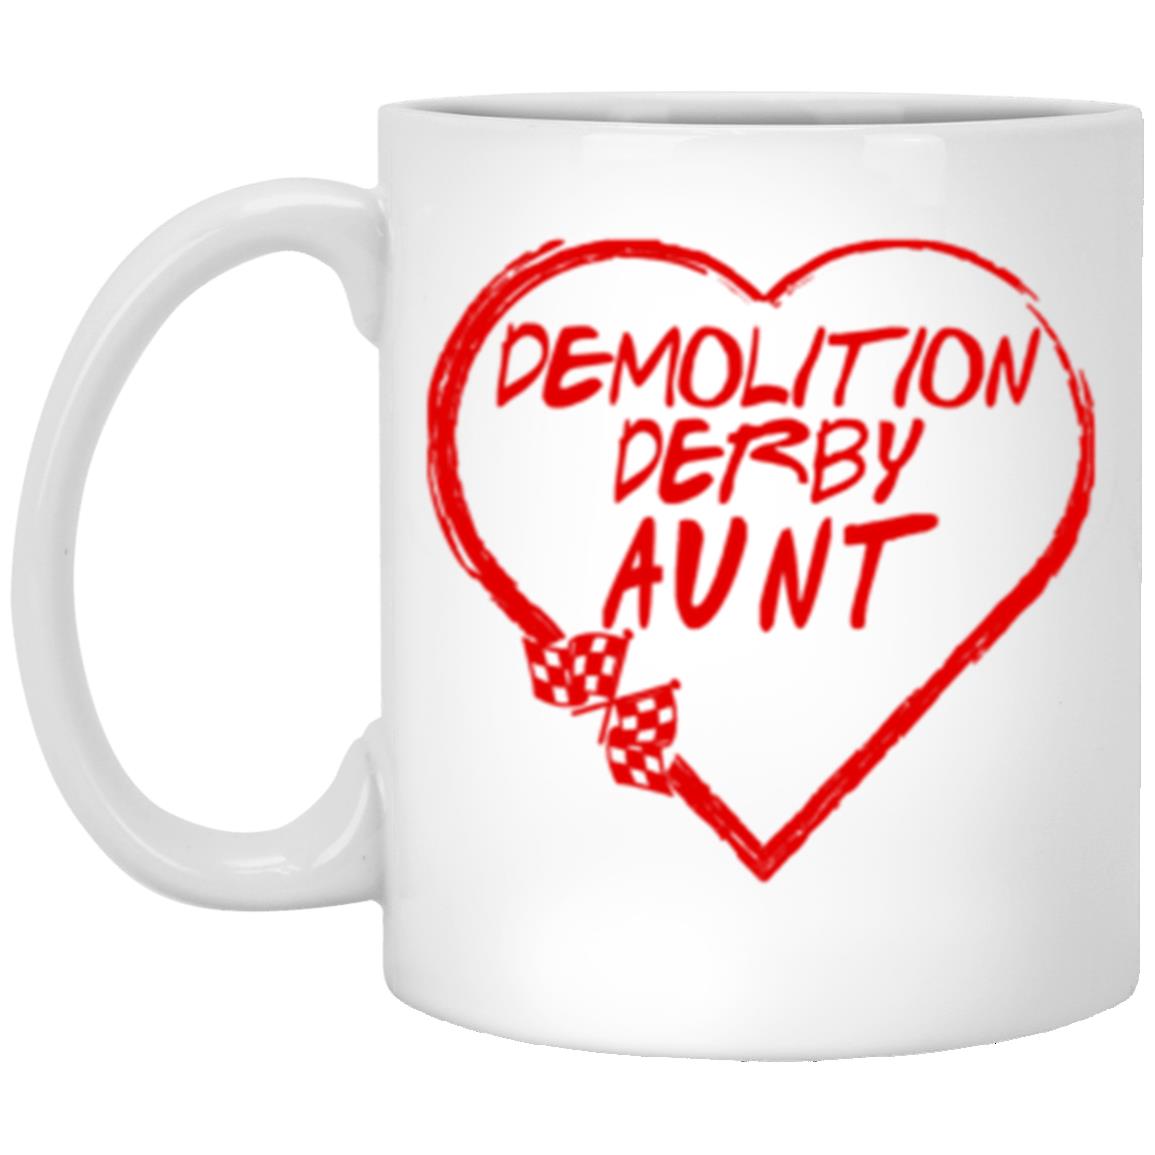 Demolition Derby Aunt Heart 11 oz. White Mug